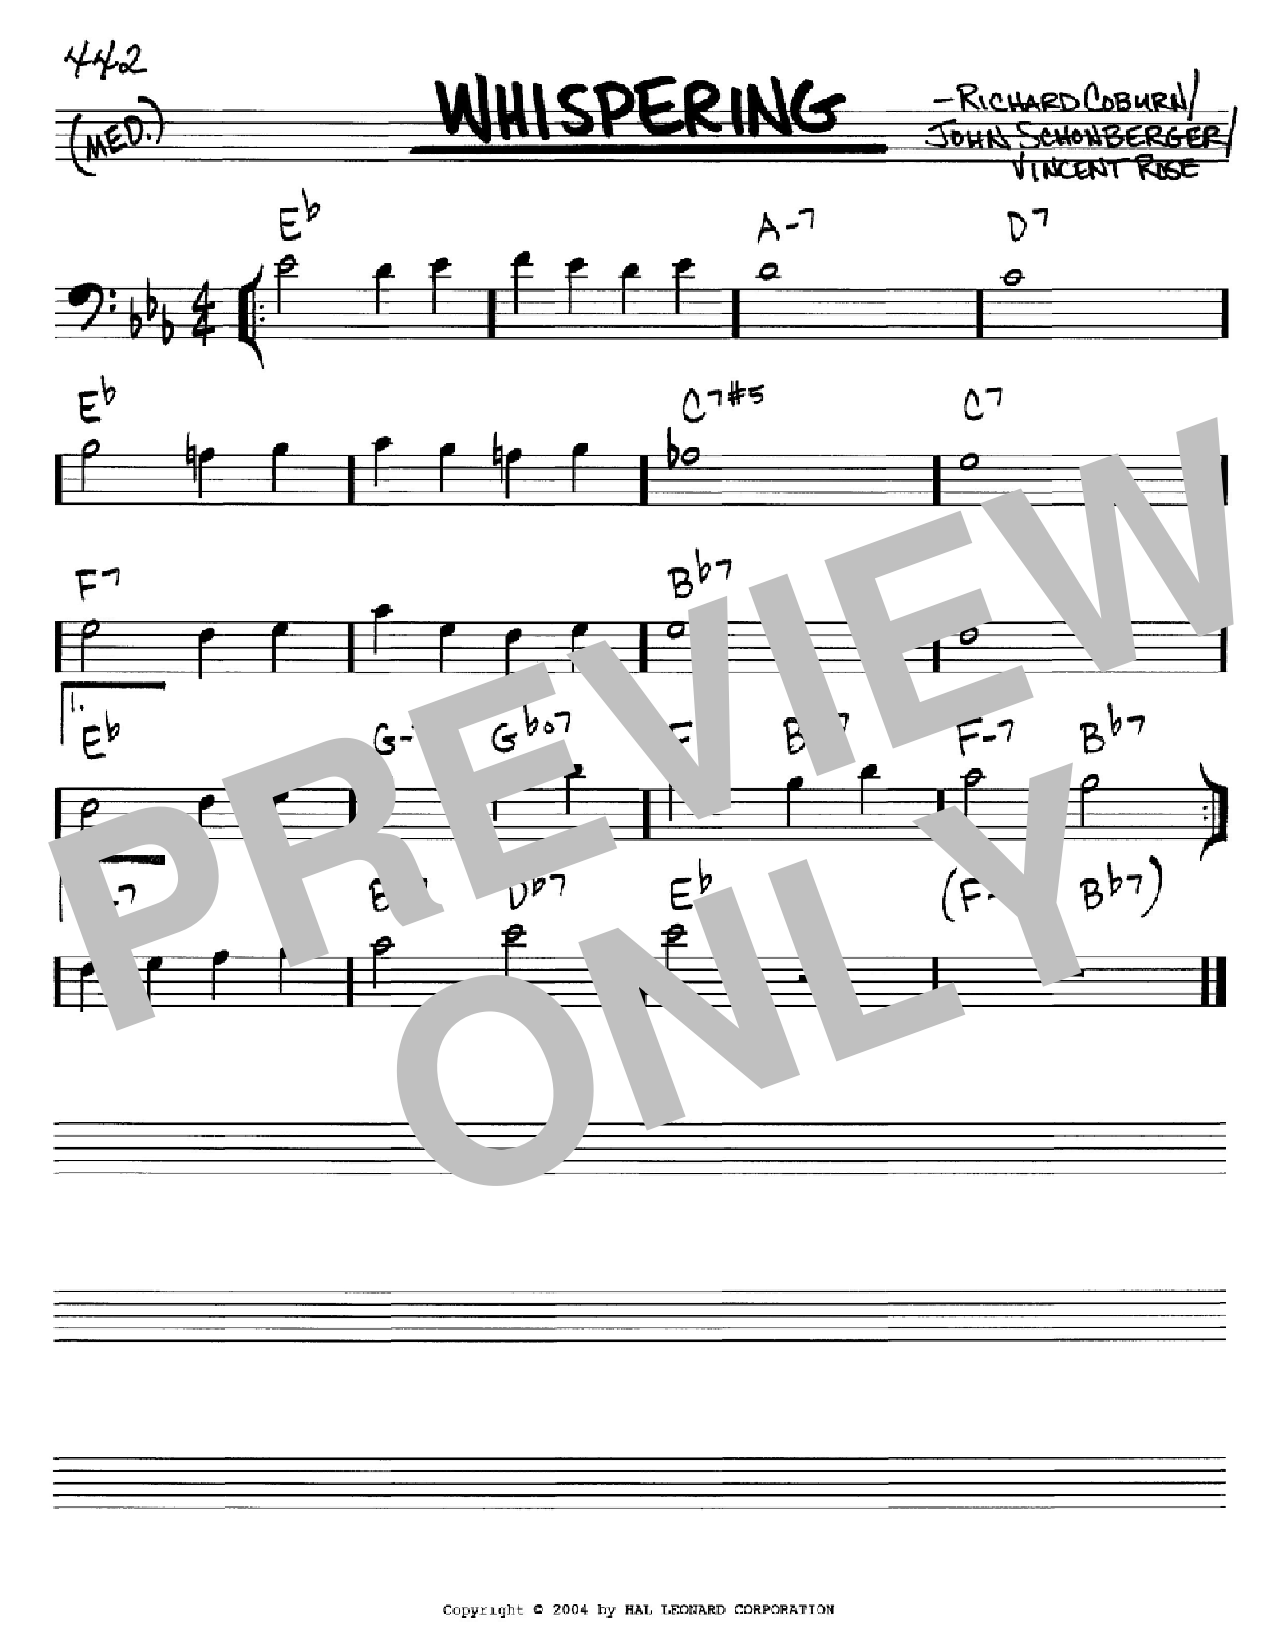 Download Richard Coburn Whispering Sheet Music